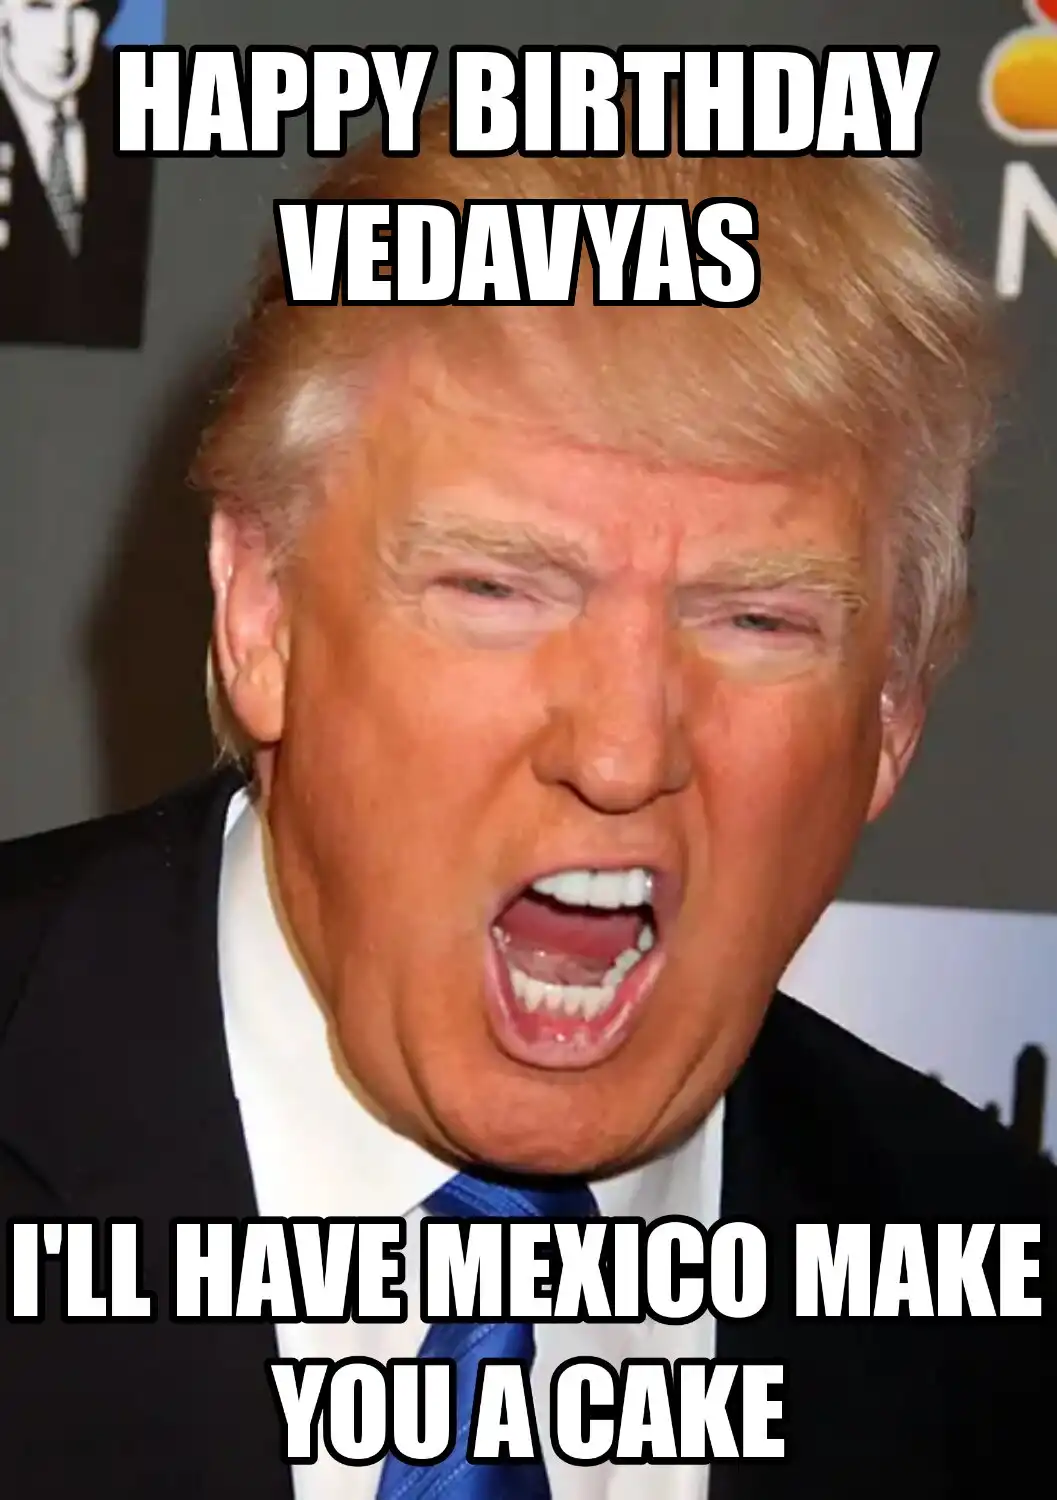 Happy Birthday Vedavyas Mexico Make You A Cake Meme